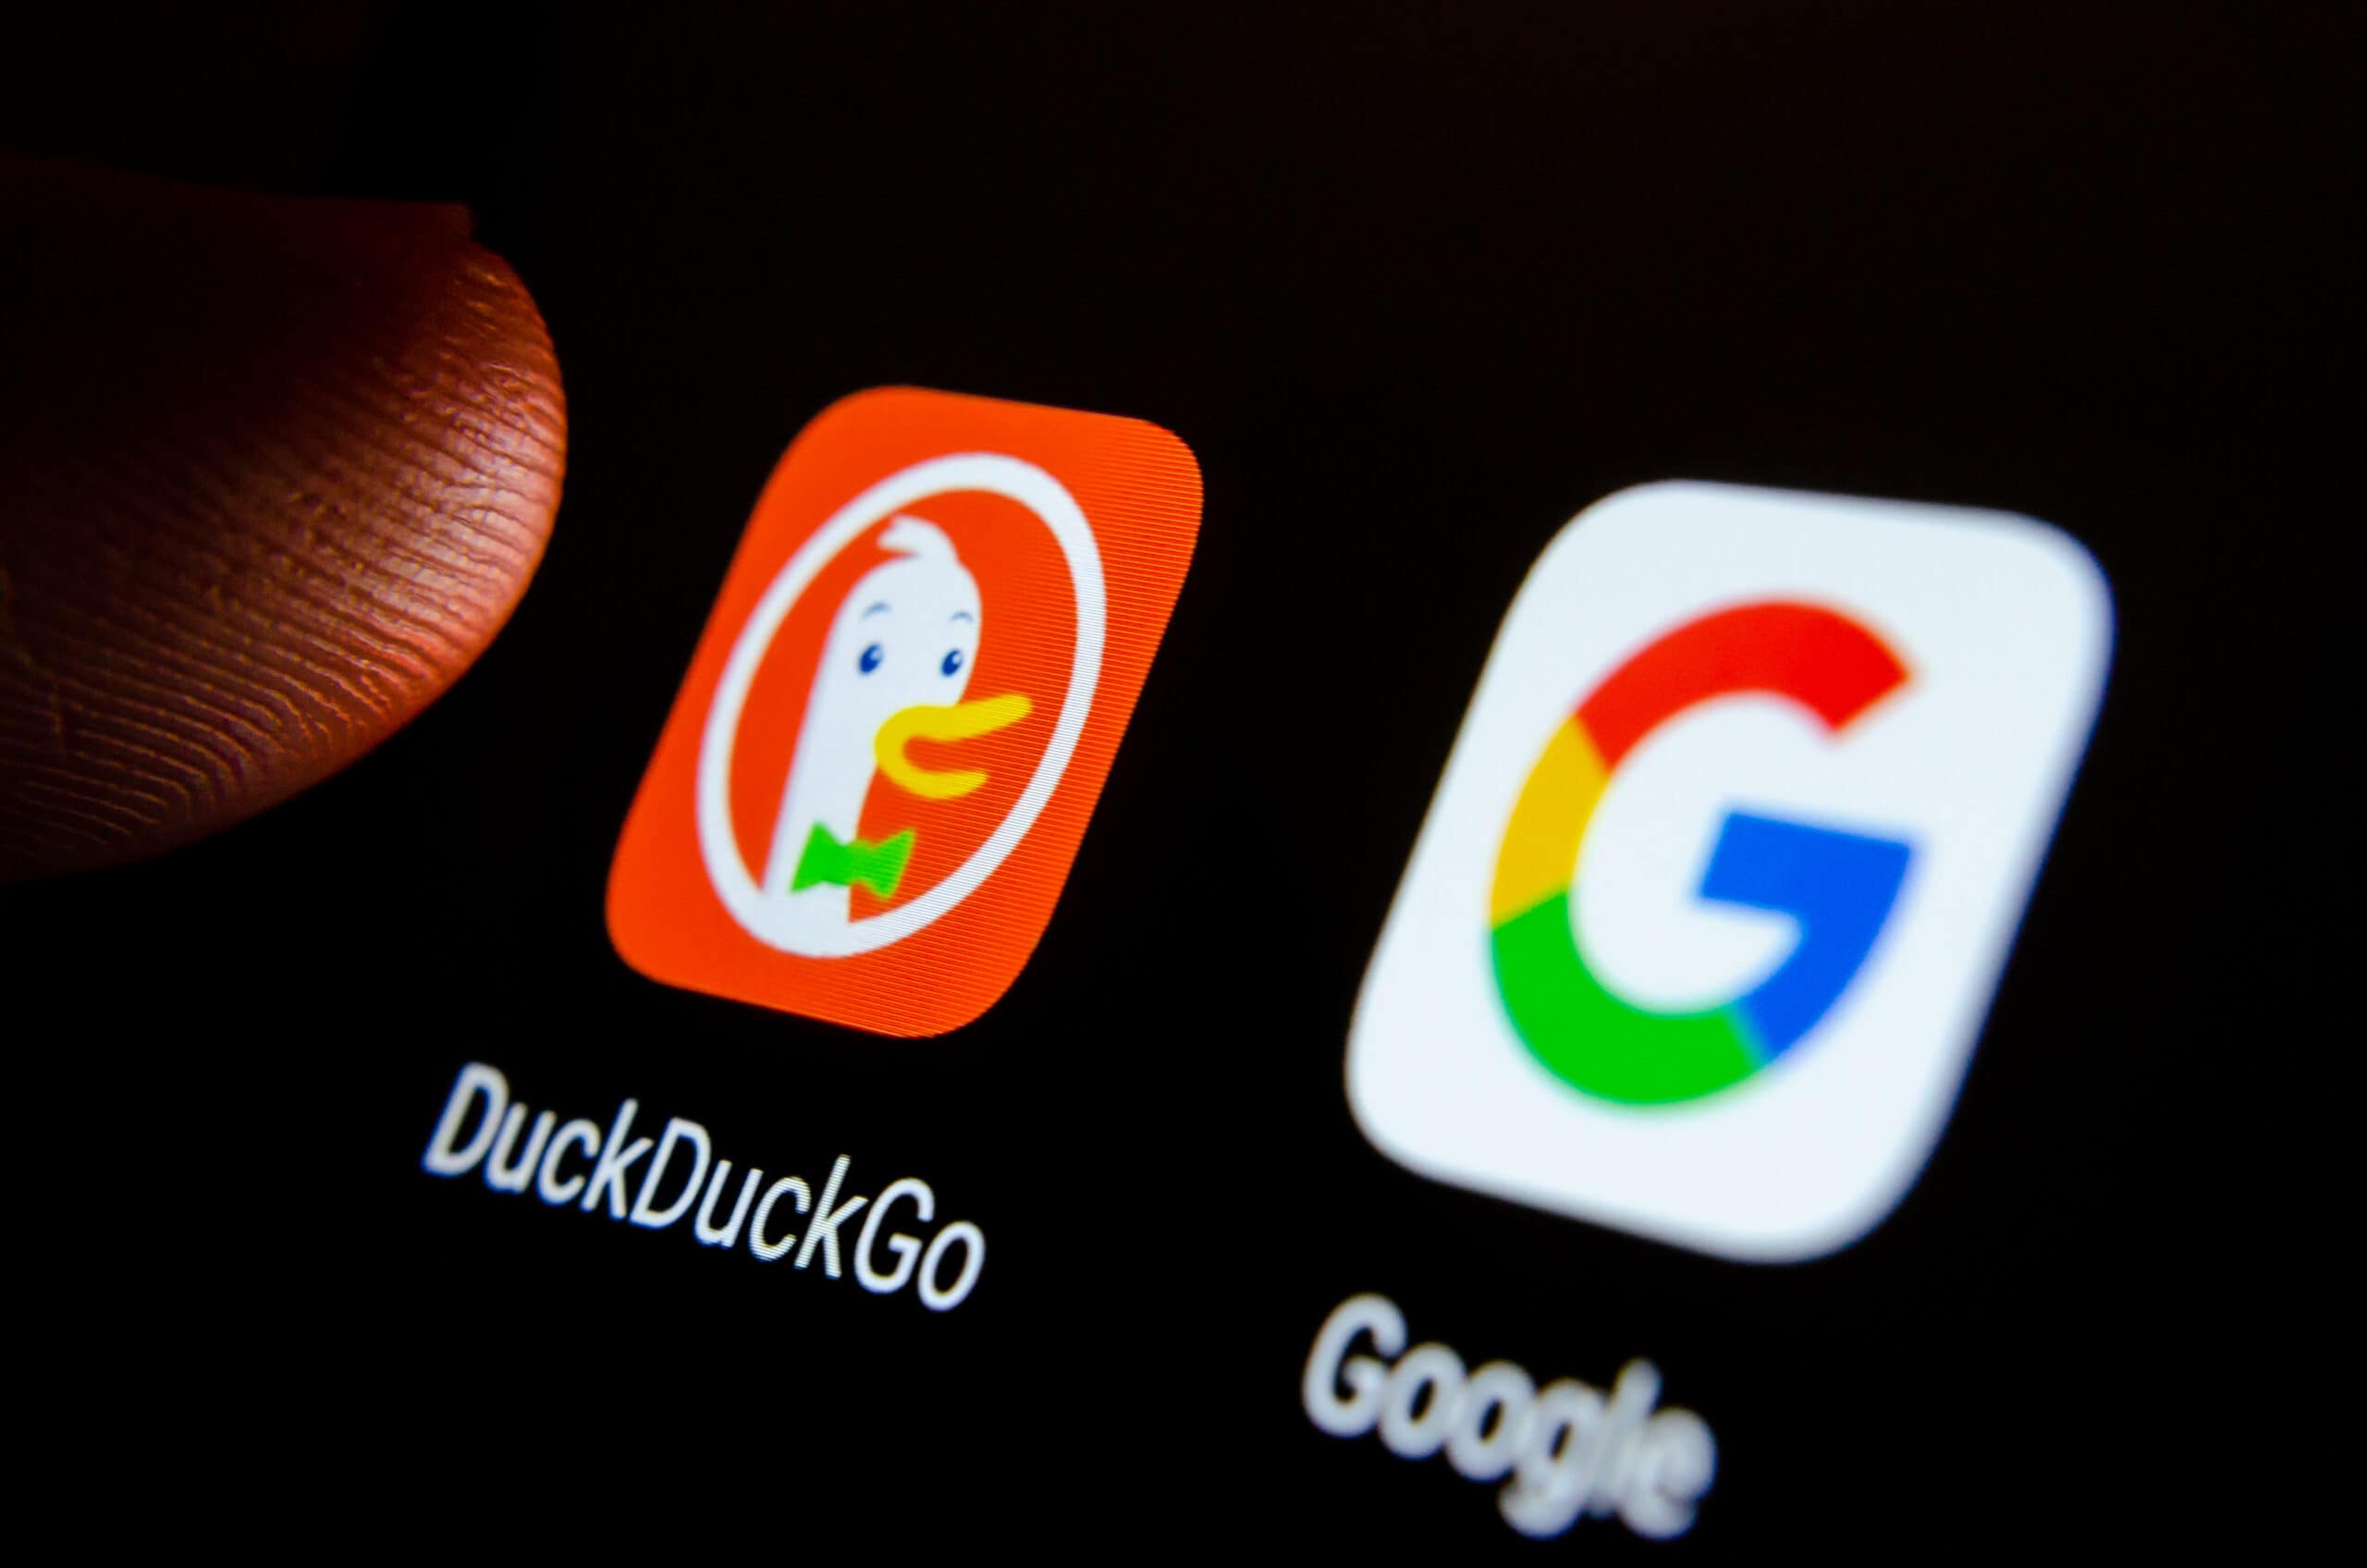 DuckDuckGo vs Google